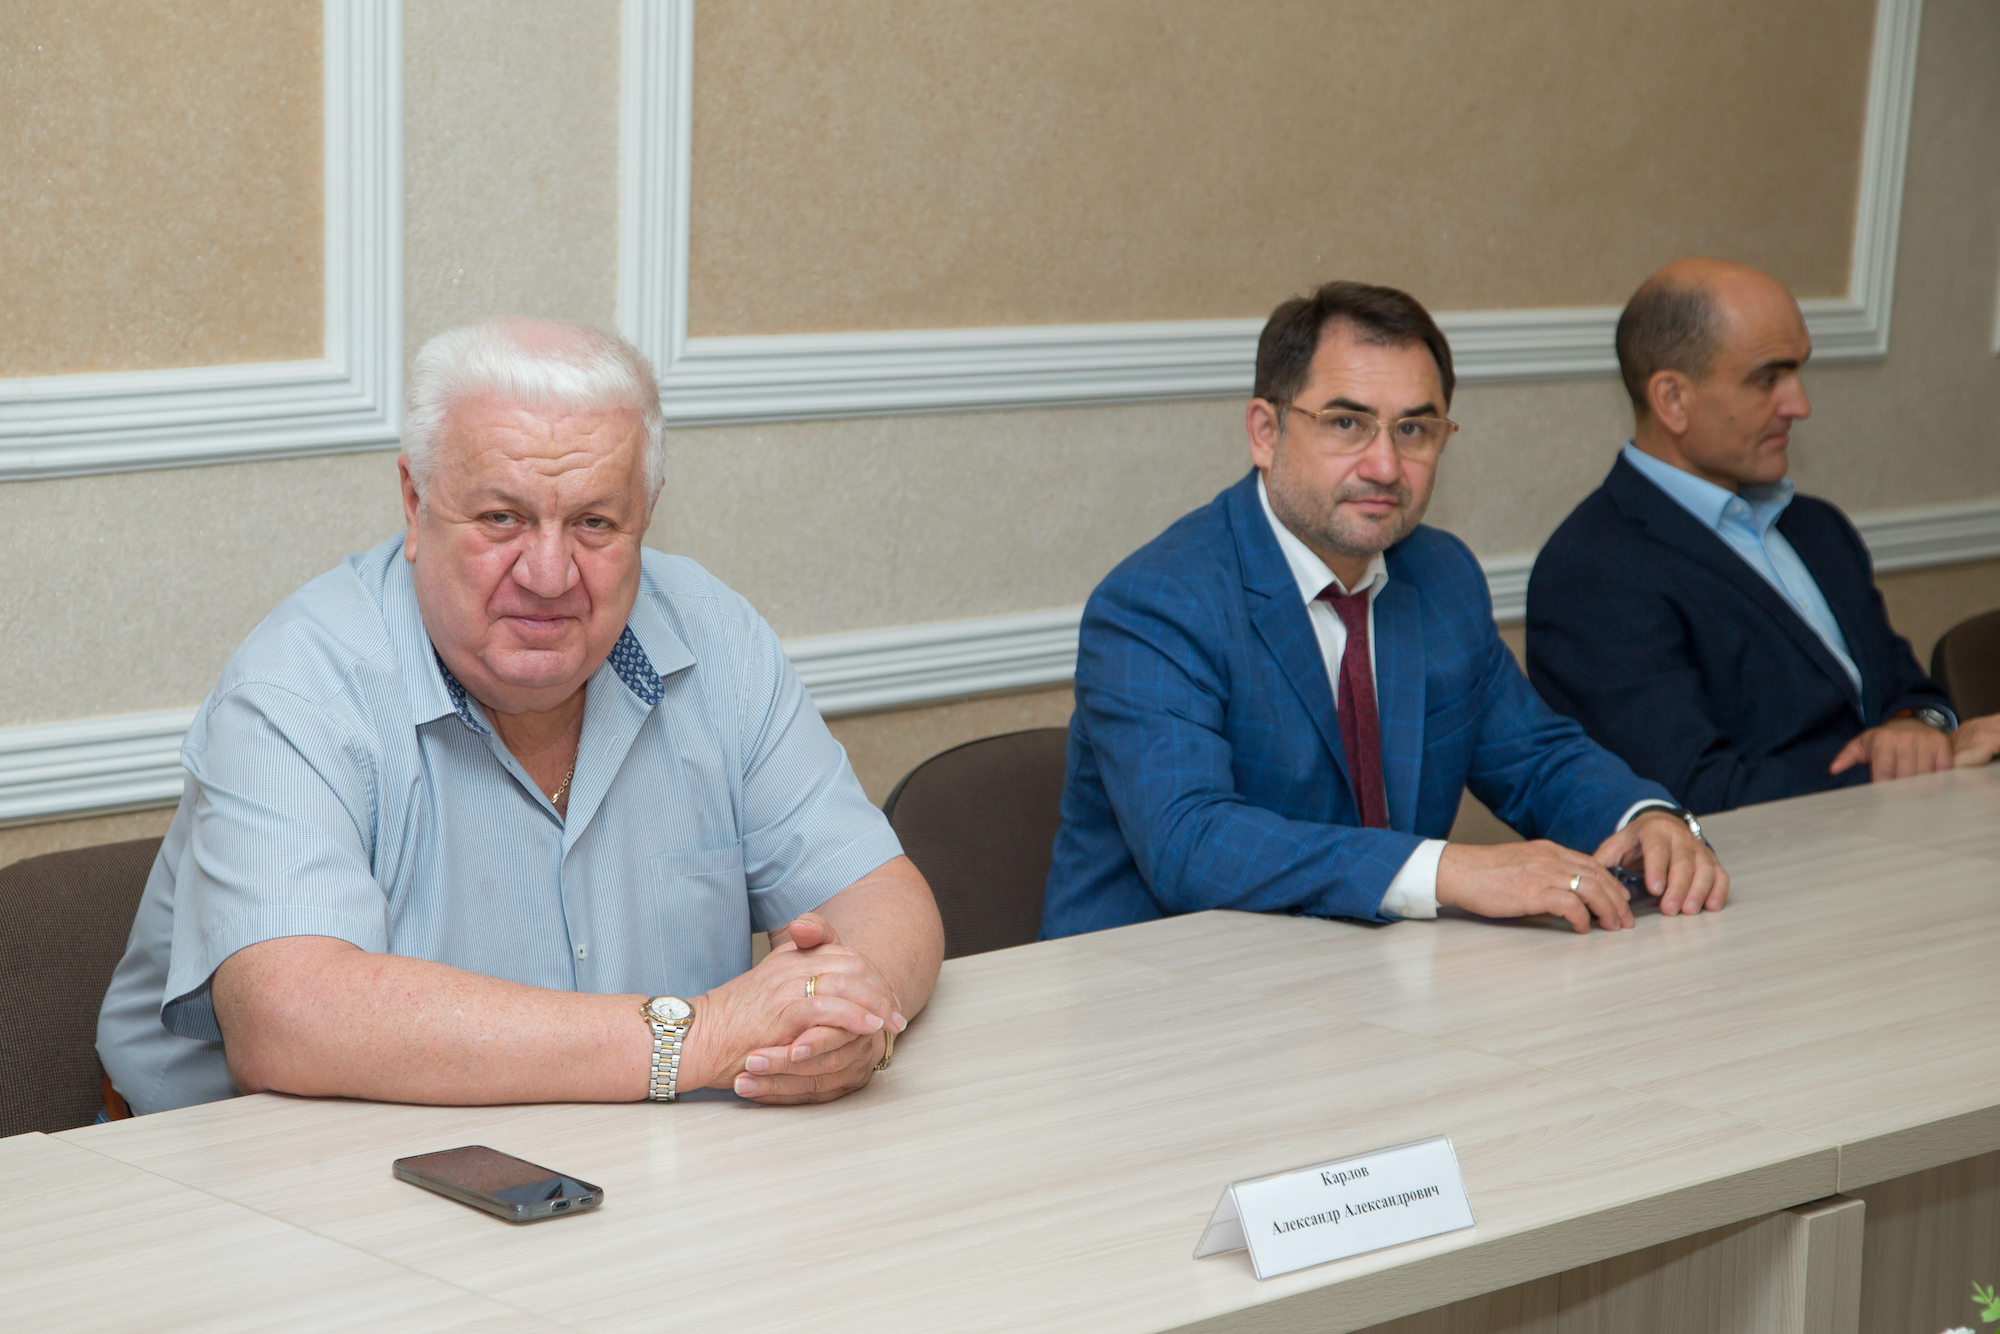 25 лет исполнилось Совету руководителей Железнодорожного района г. Барнаула